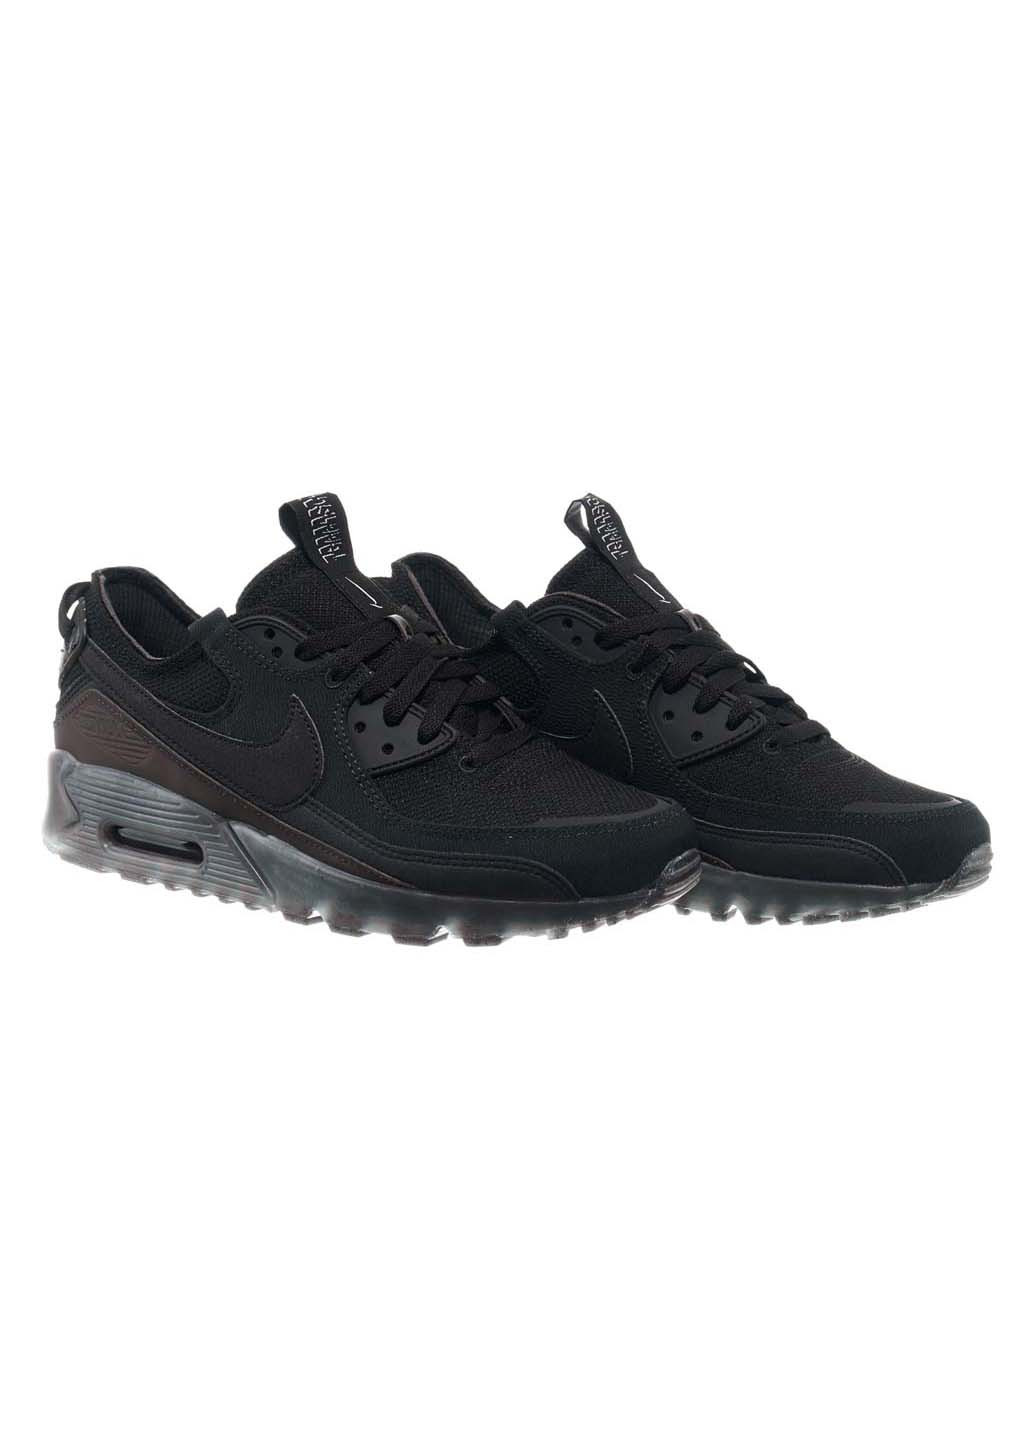 Черные демисезонные кроссовки мужские air max terrascape 90 Nike